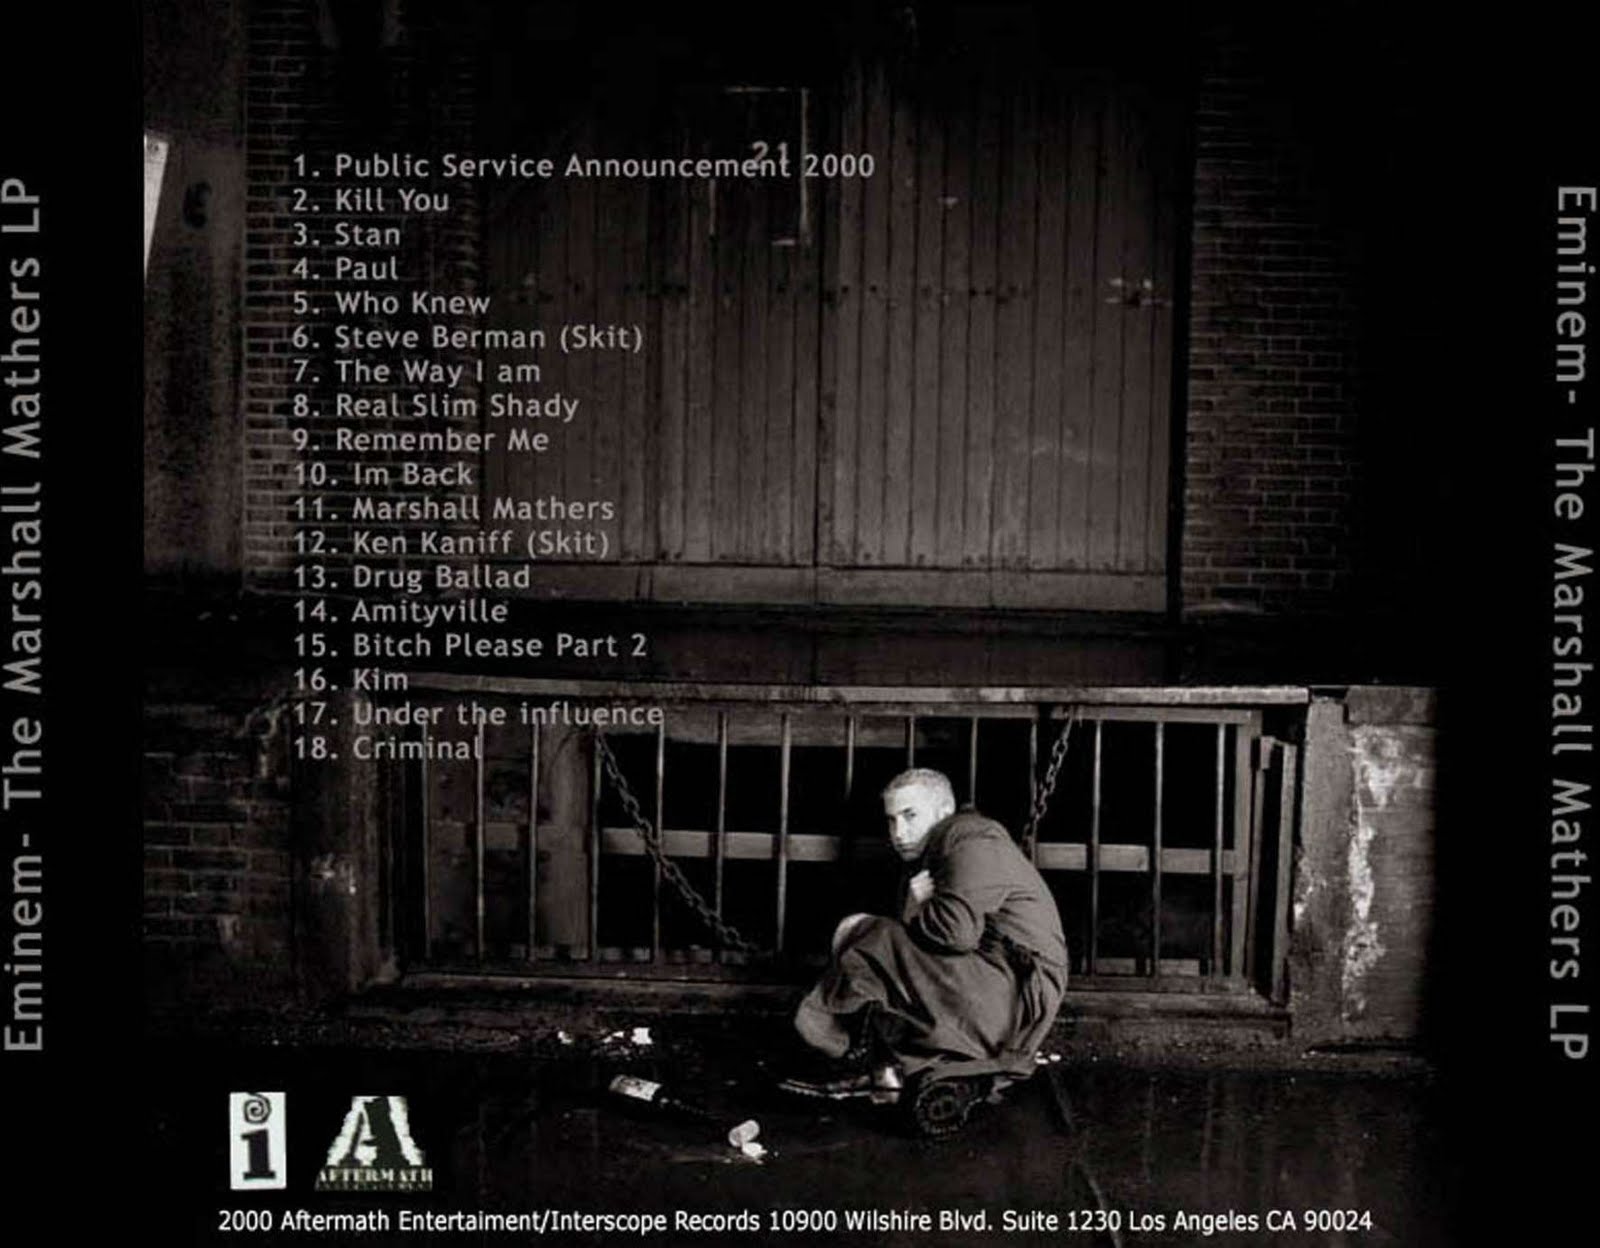 Todo Para los 13's: Eminem - Slim Shady LP1600 x 1248